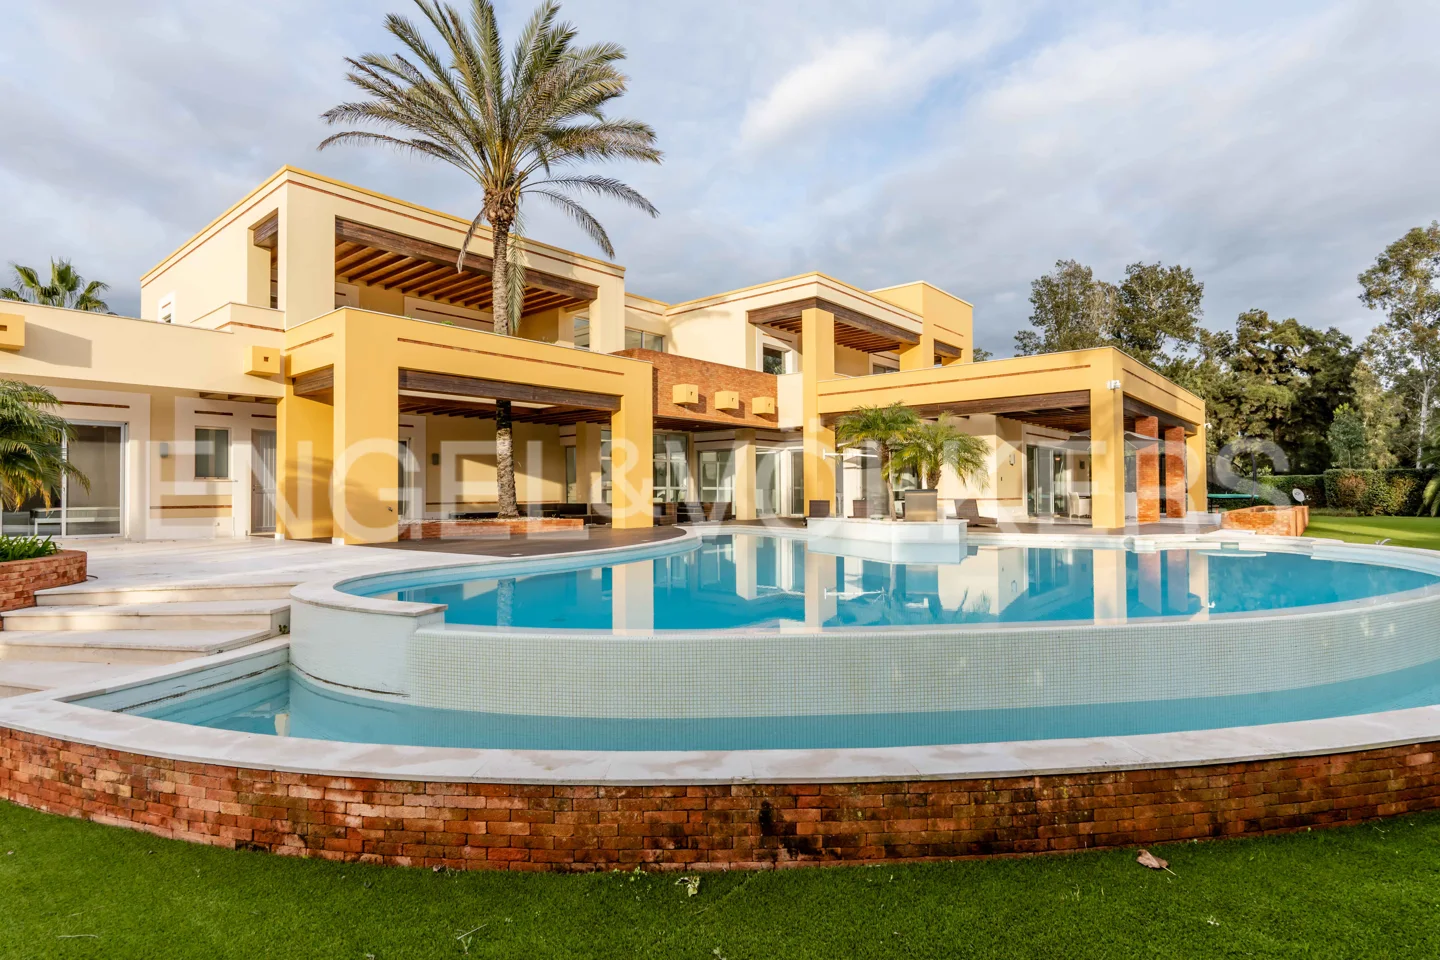 Incrível moradia contemporânea de 5 quartos com piscina interior e exterior, primeira linha Penina Golf - Alvor